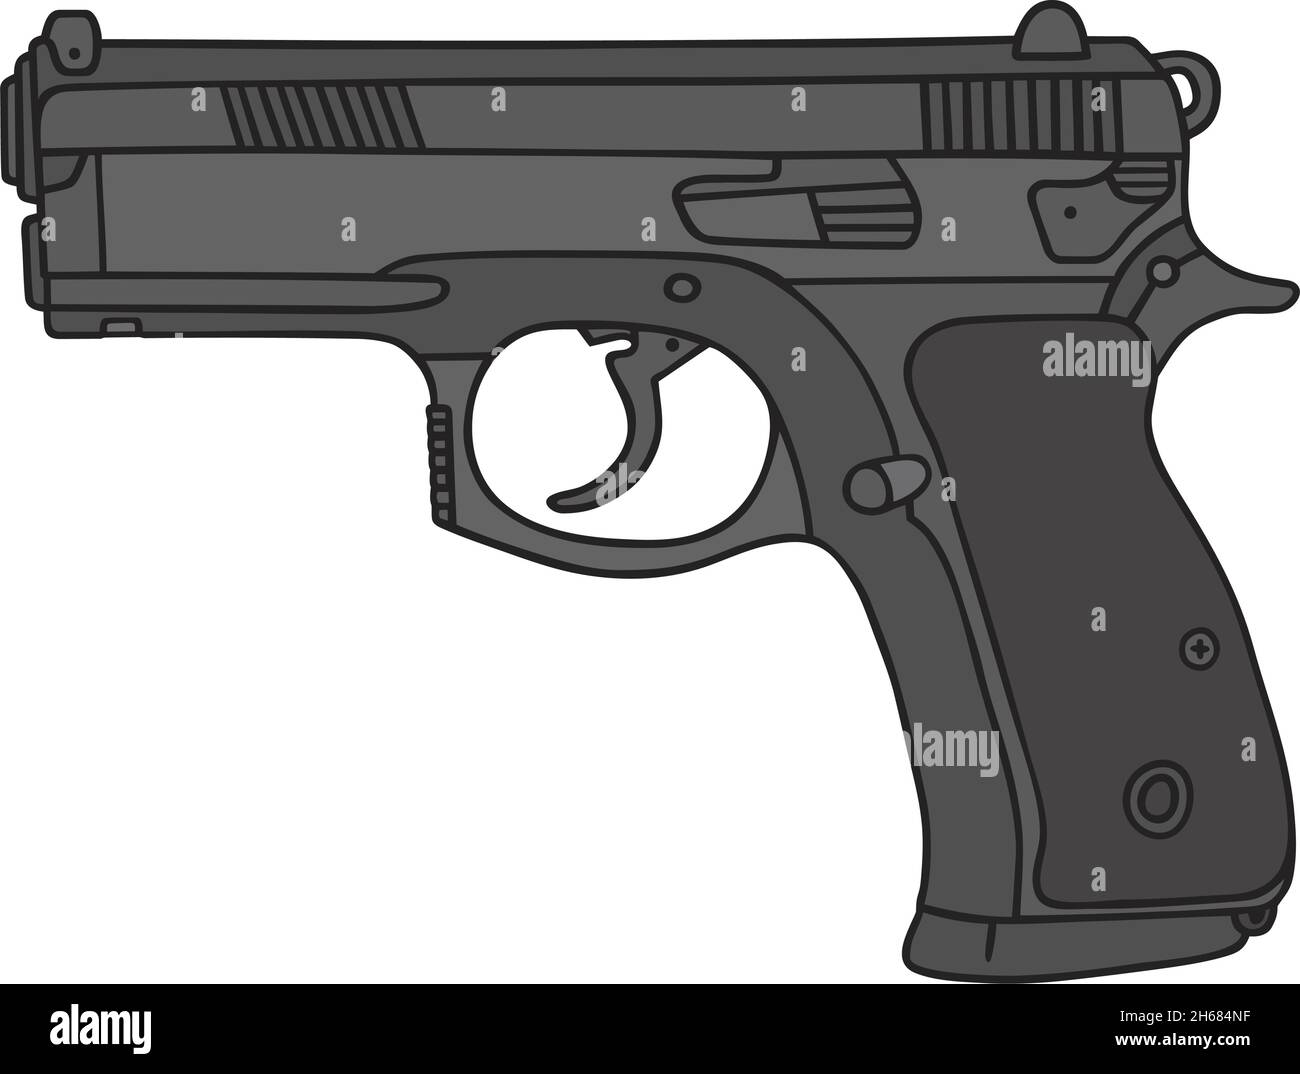 Il disegno a mano vettorizzato di una pistola recente Illustrazione Vettoriale